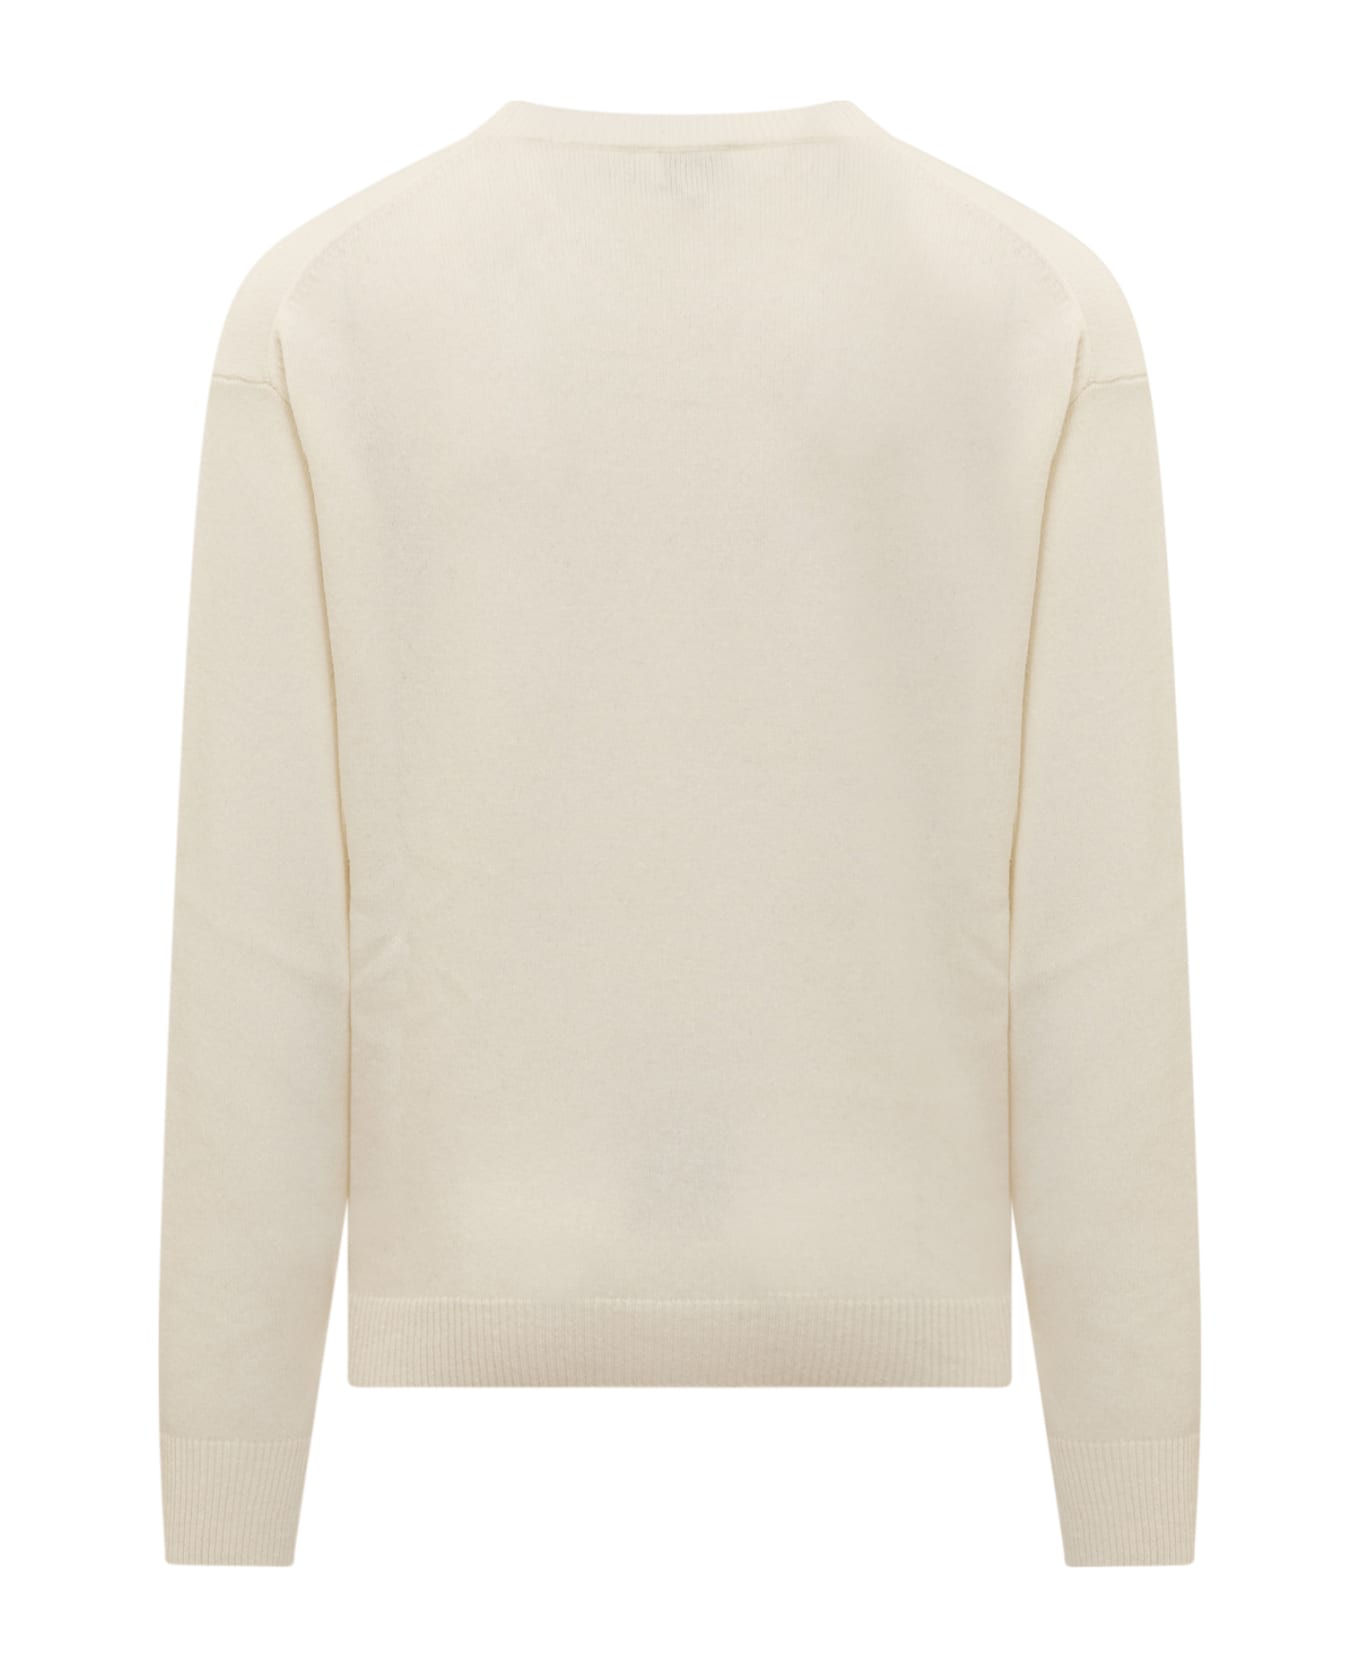 Kenzo Boke Flower Sweater - Off White